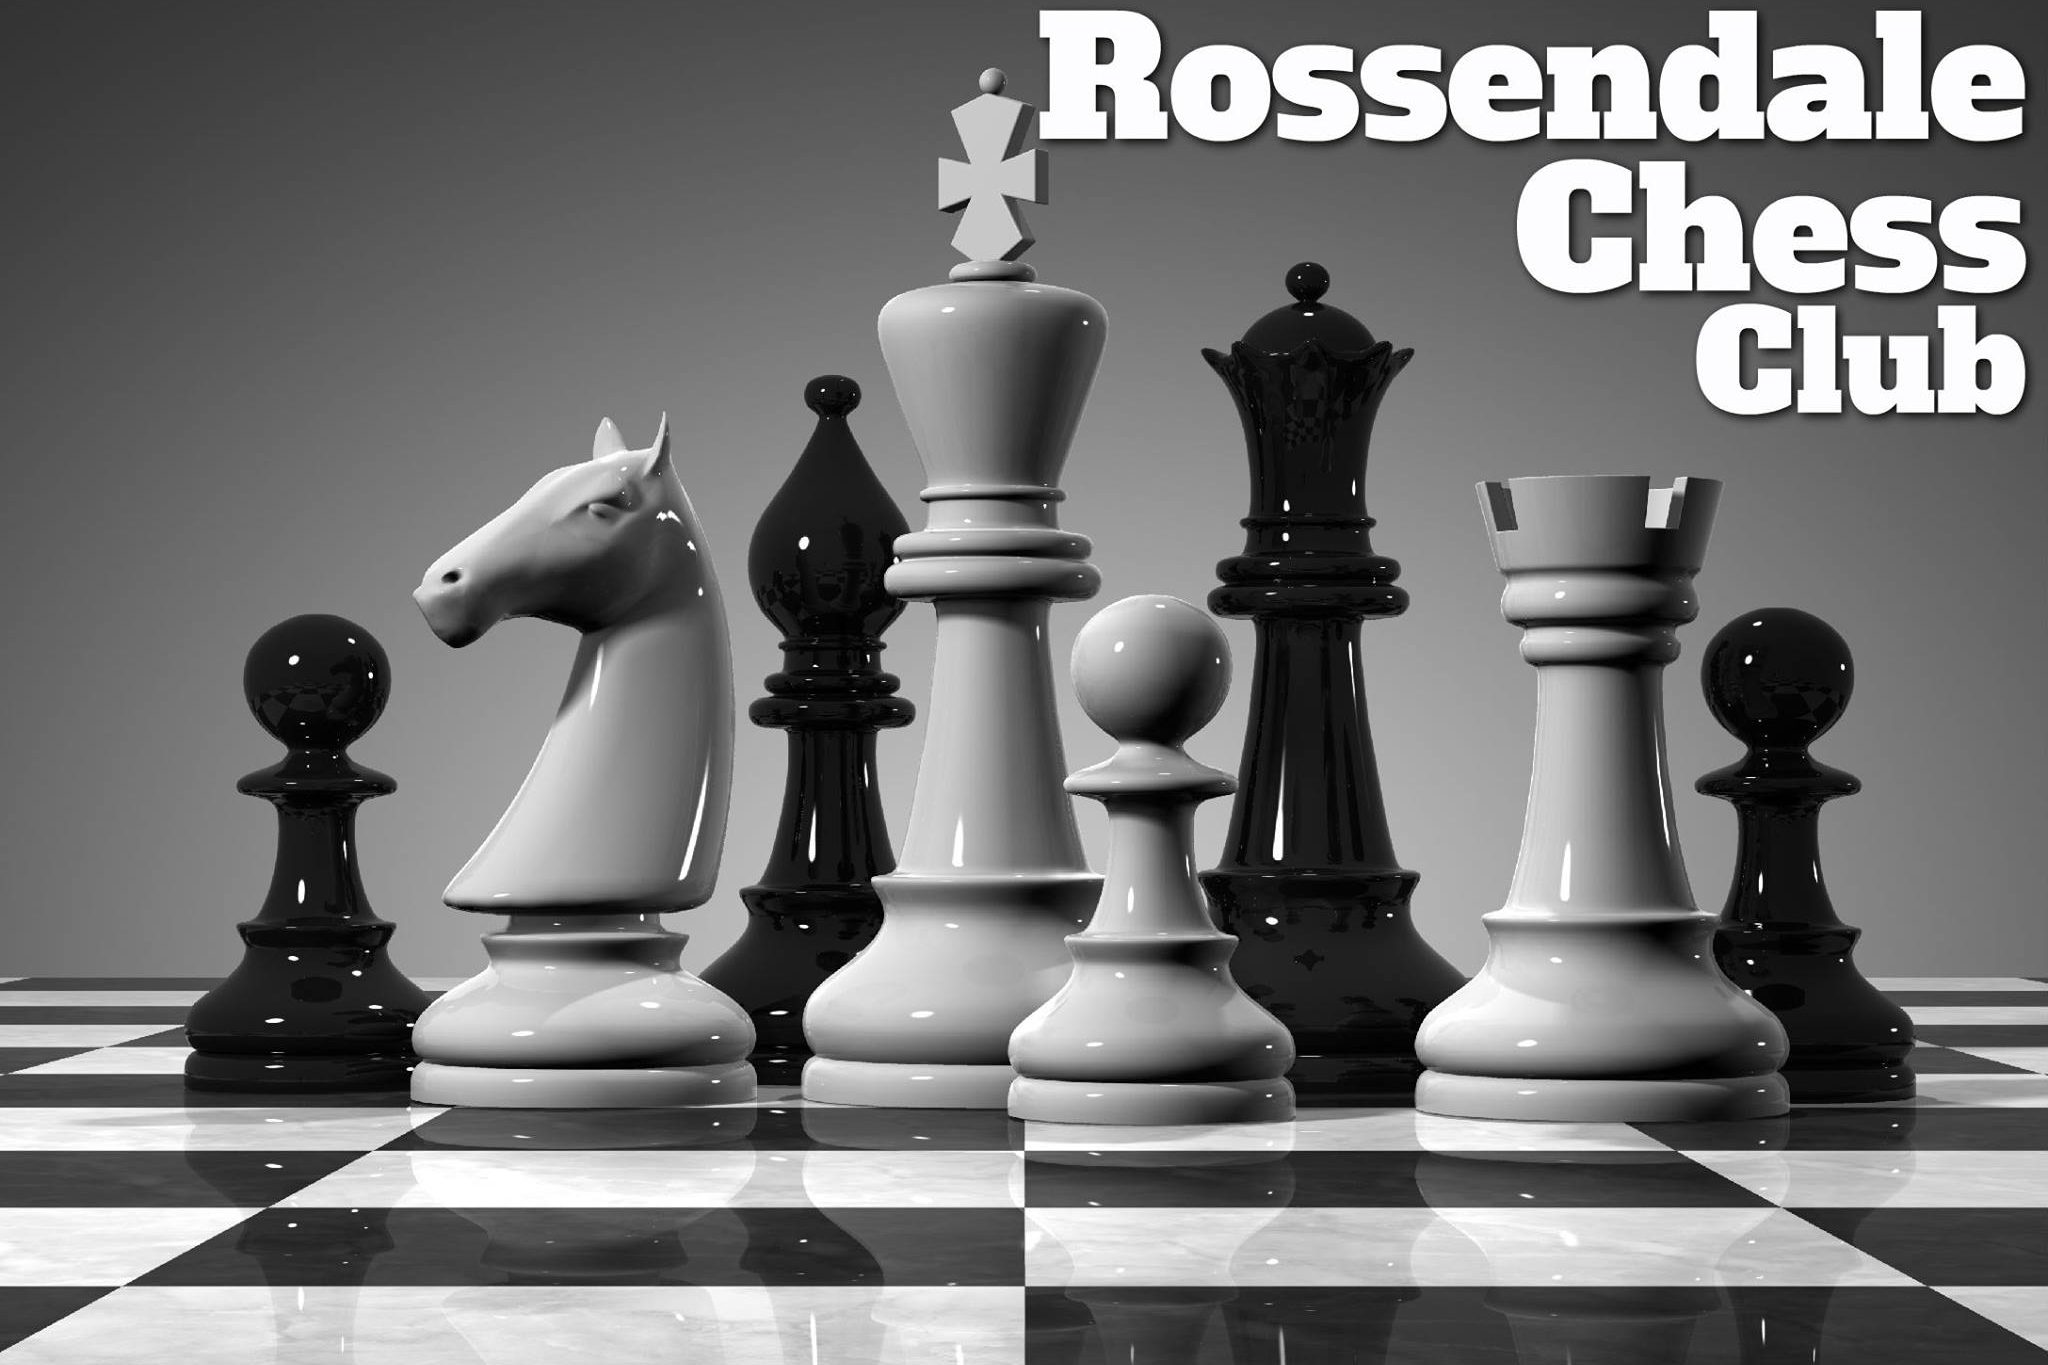 Rawtenstall Chess Club